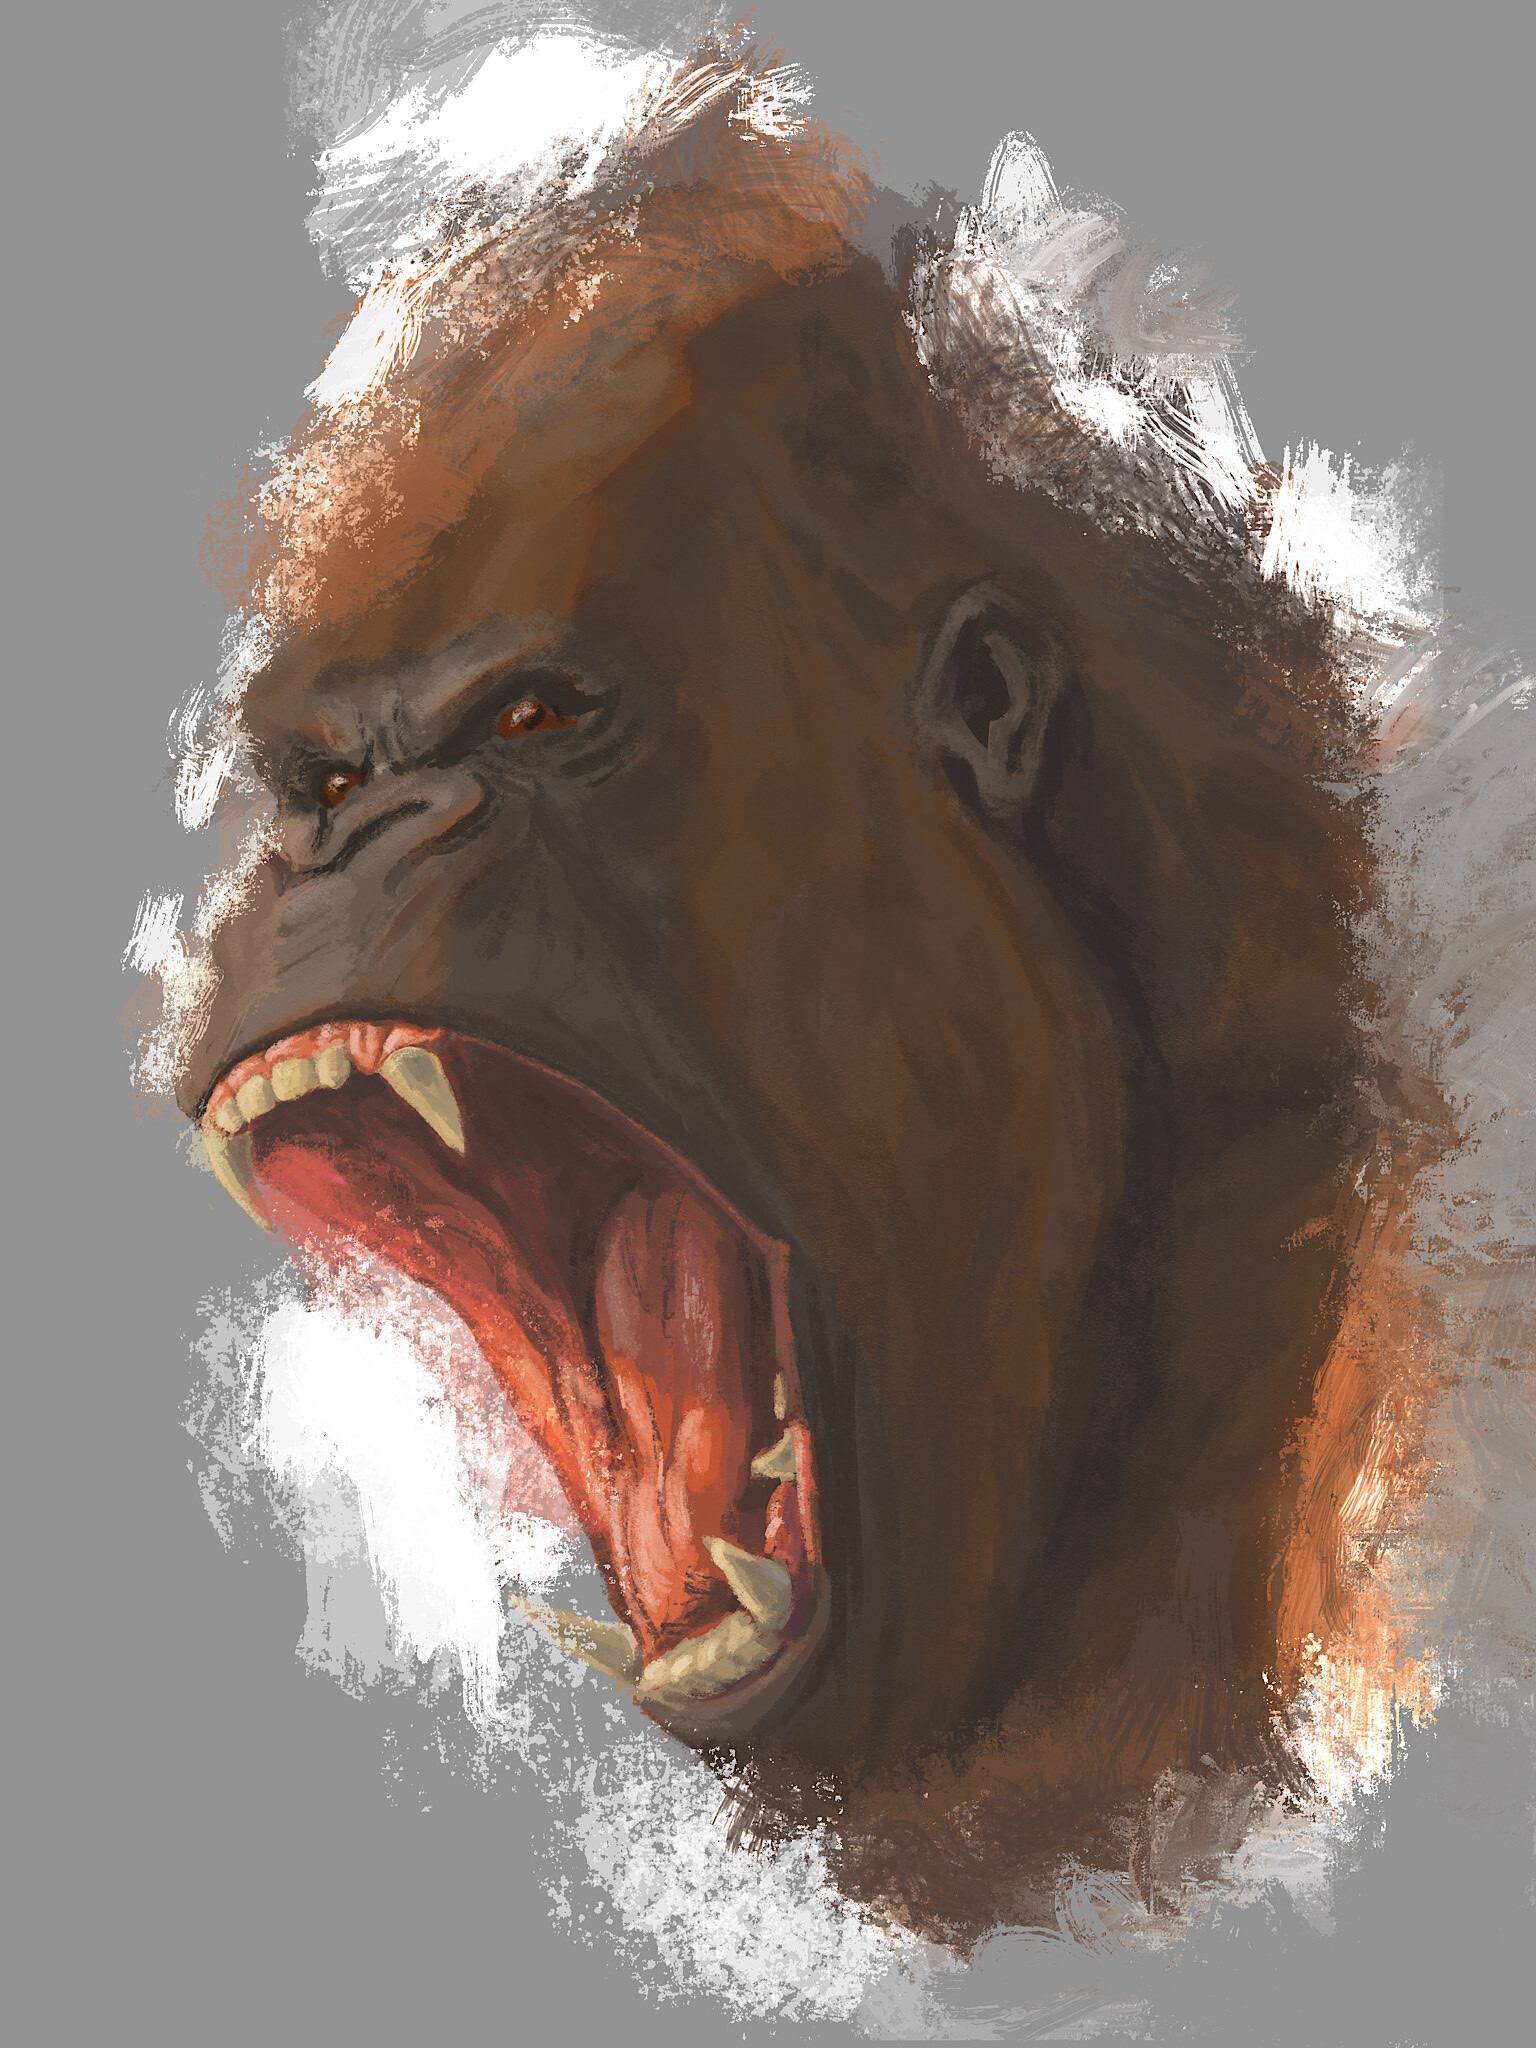 angry ape drawing